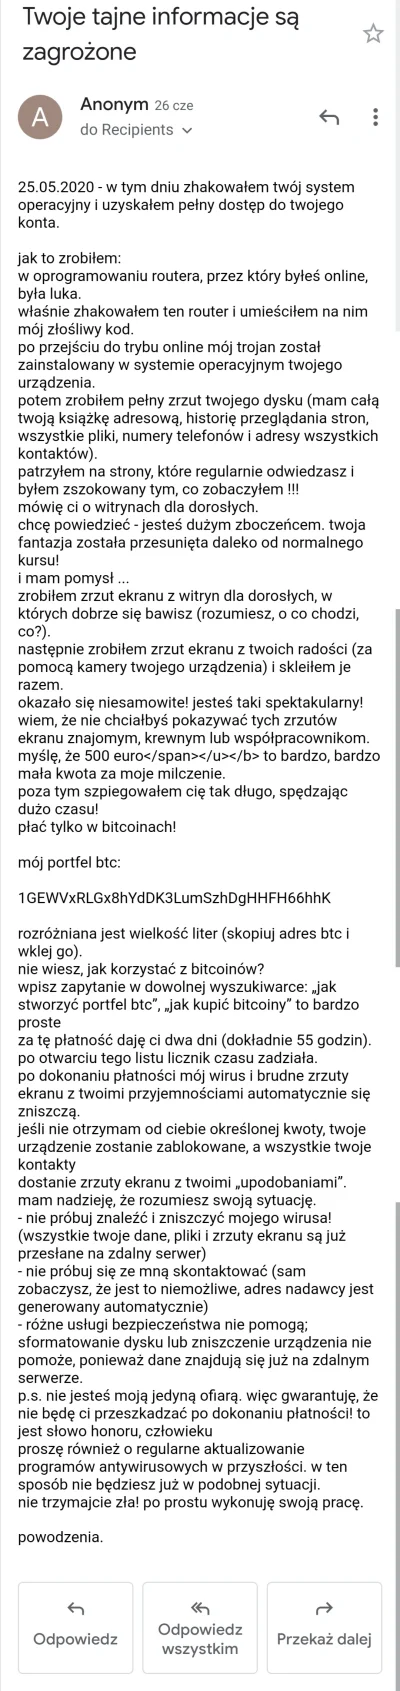 TaiFunsS - Hakerzy z Białowieży XD Ma ktoś pożyczyć 500ojro???
#hakerzyzbialowiezy #...